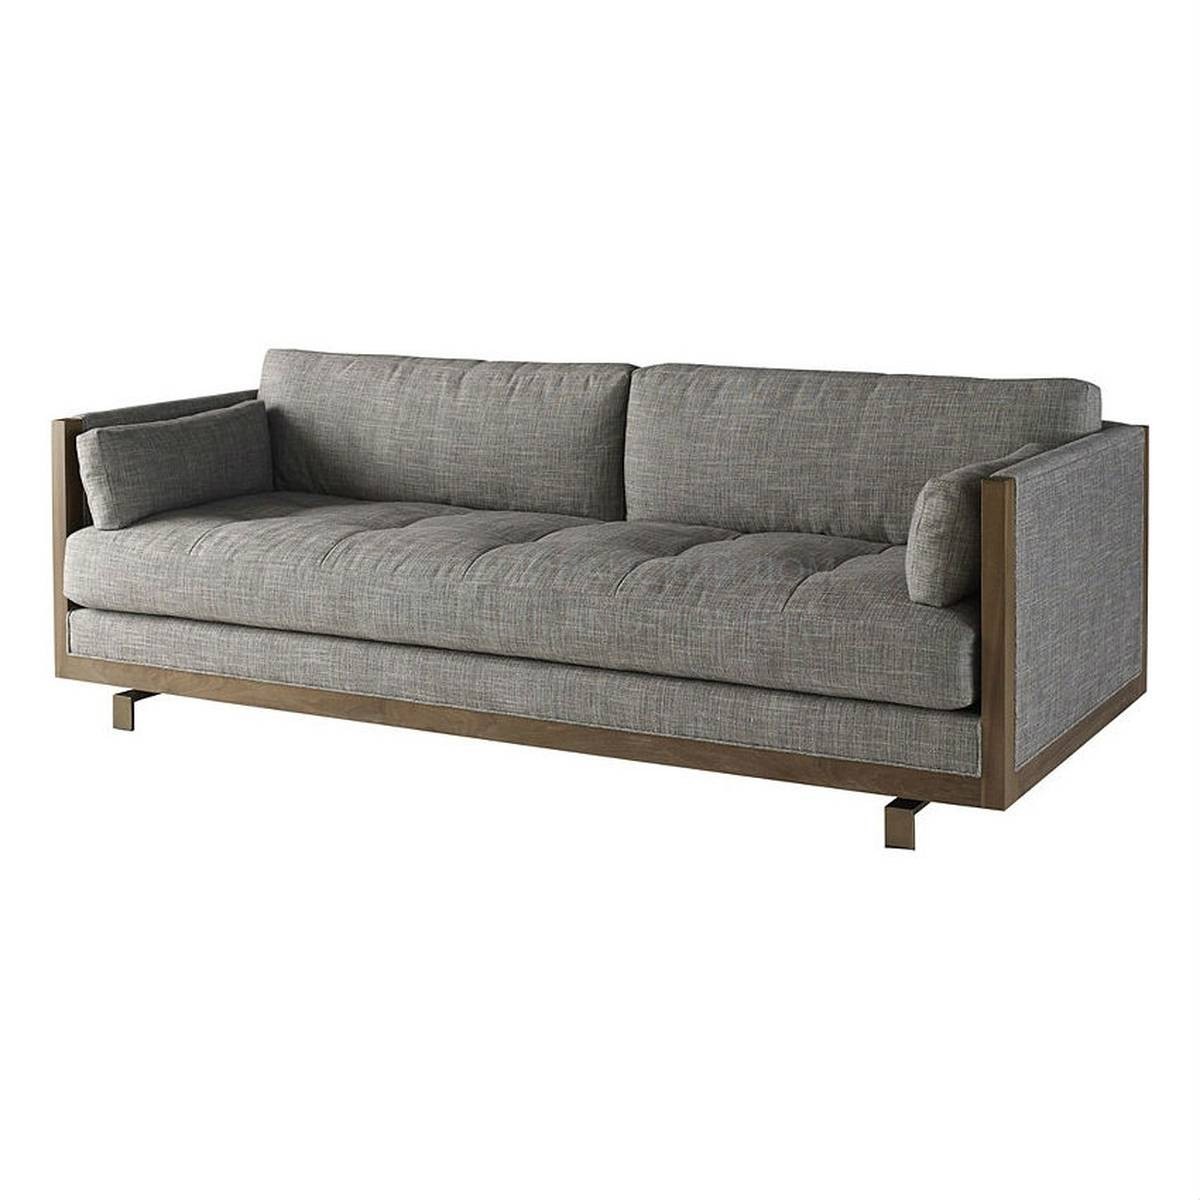 Прямой диван Framework sofa из США фабрики BAKER